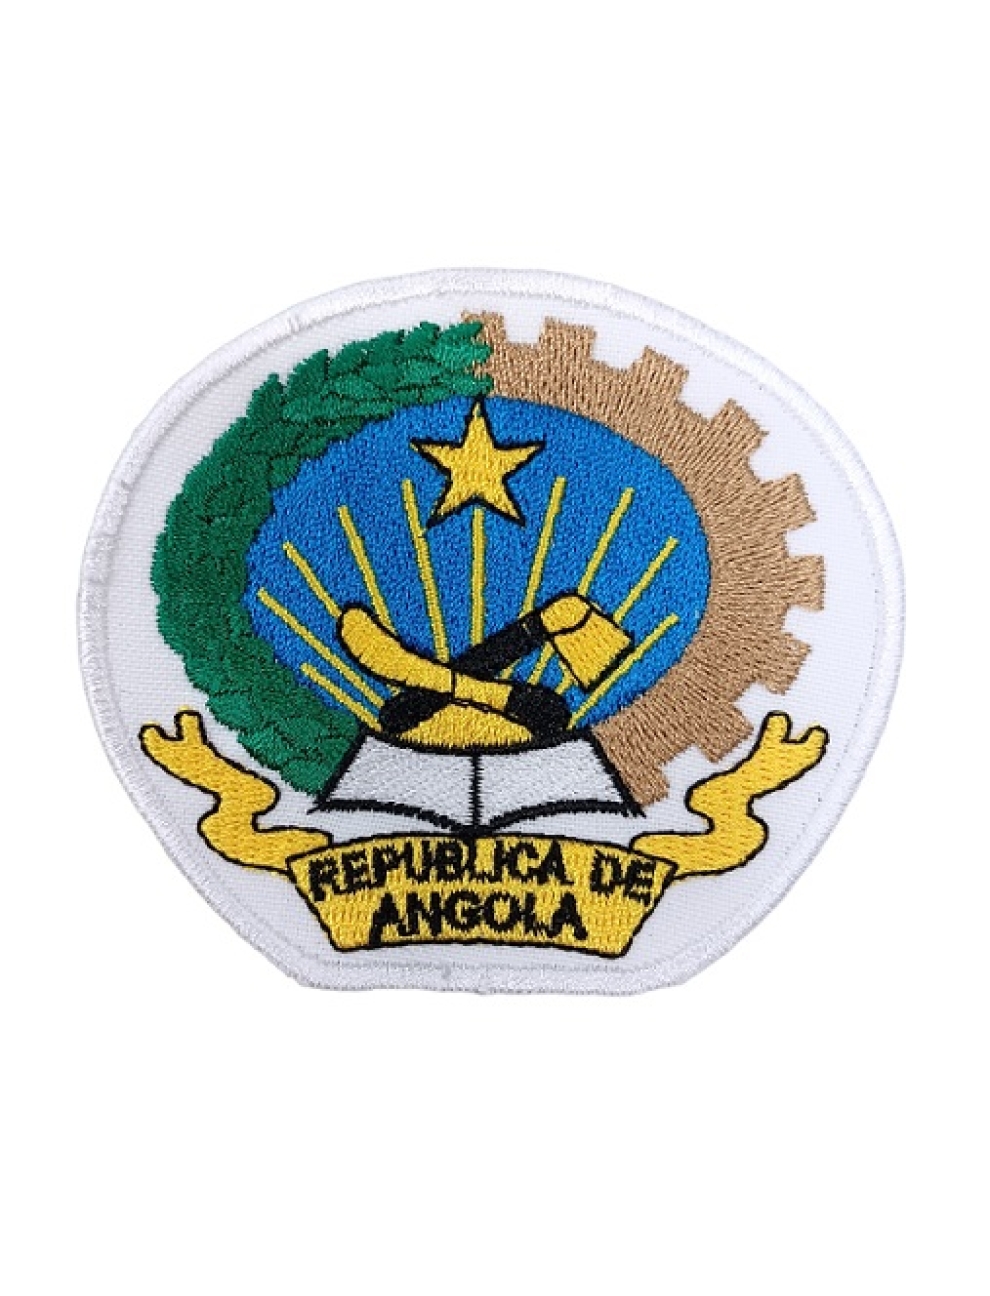 Angola - República de Angola